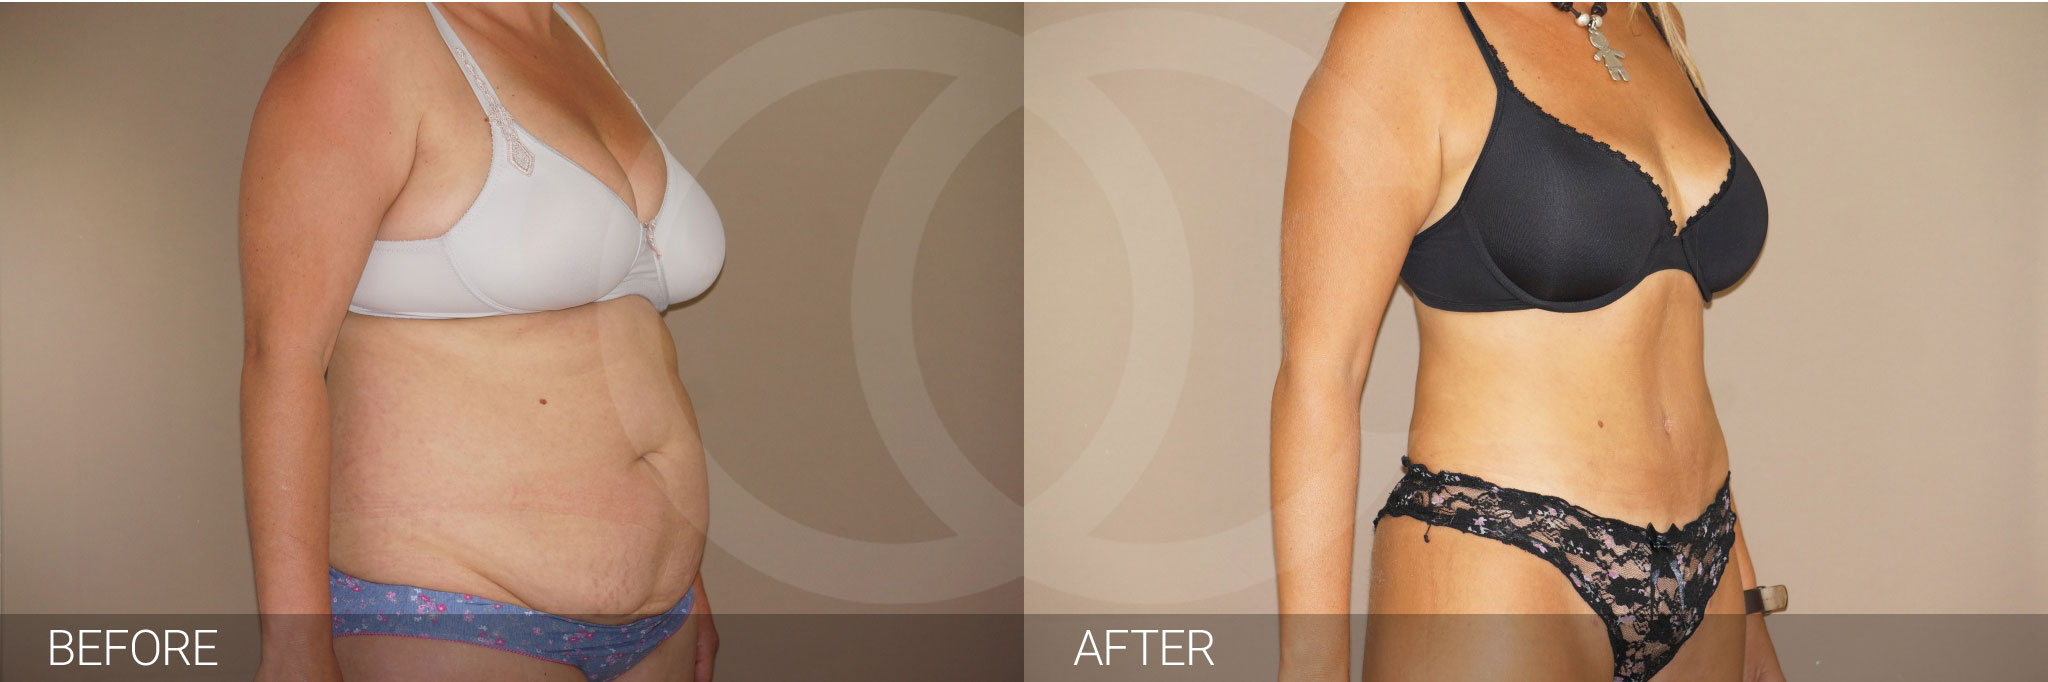 Antes y después Fotos de cirugía de abdomen fotos reales de pacientes 6.3 | Ocean Clinic Marbella Madrid